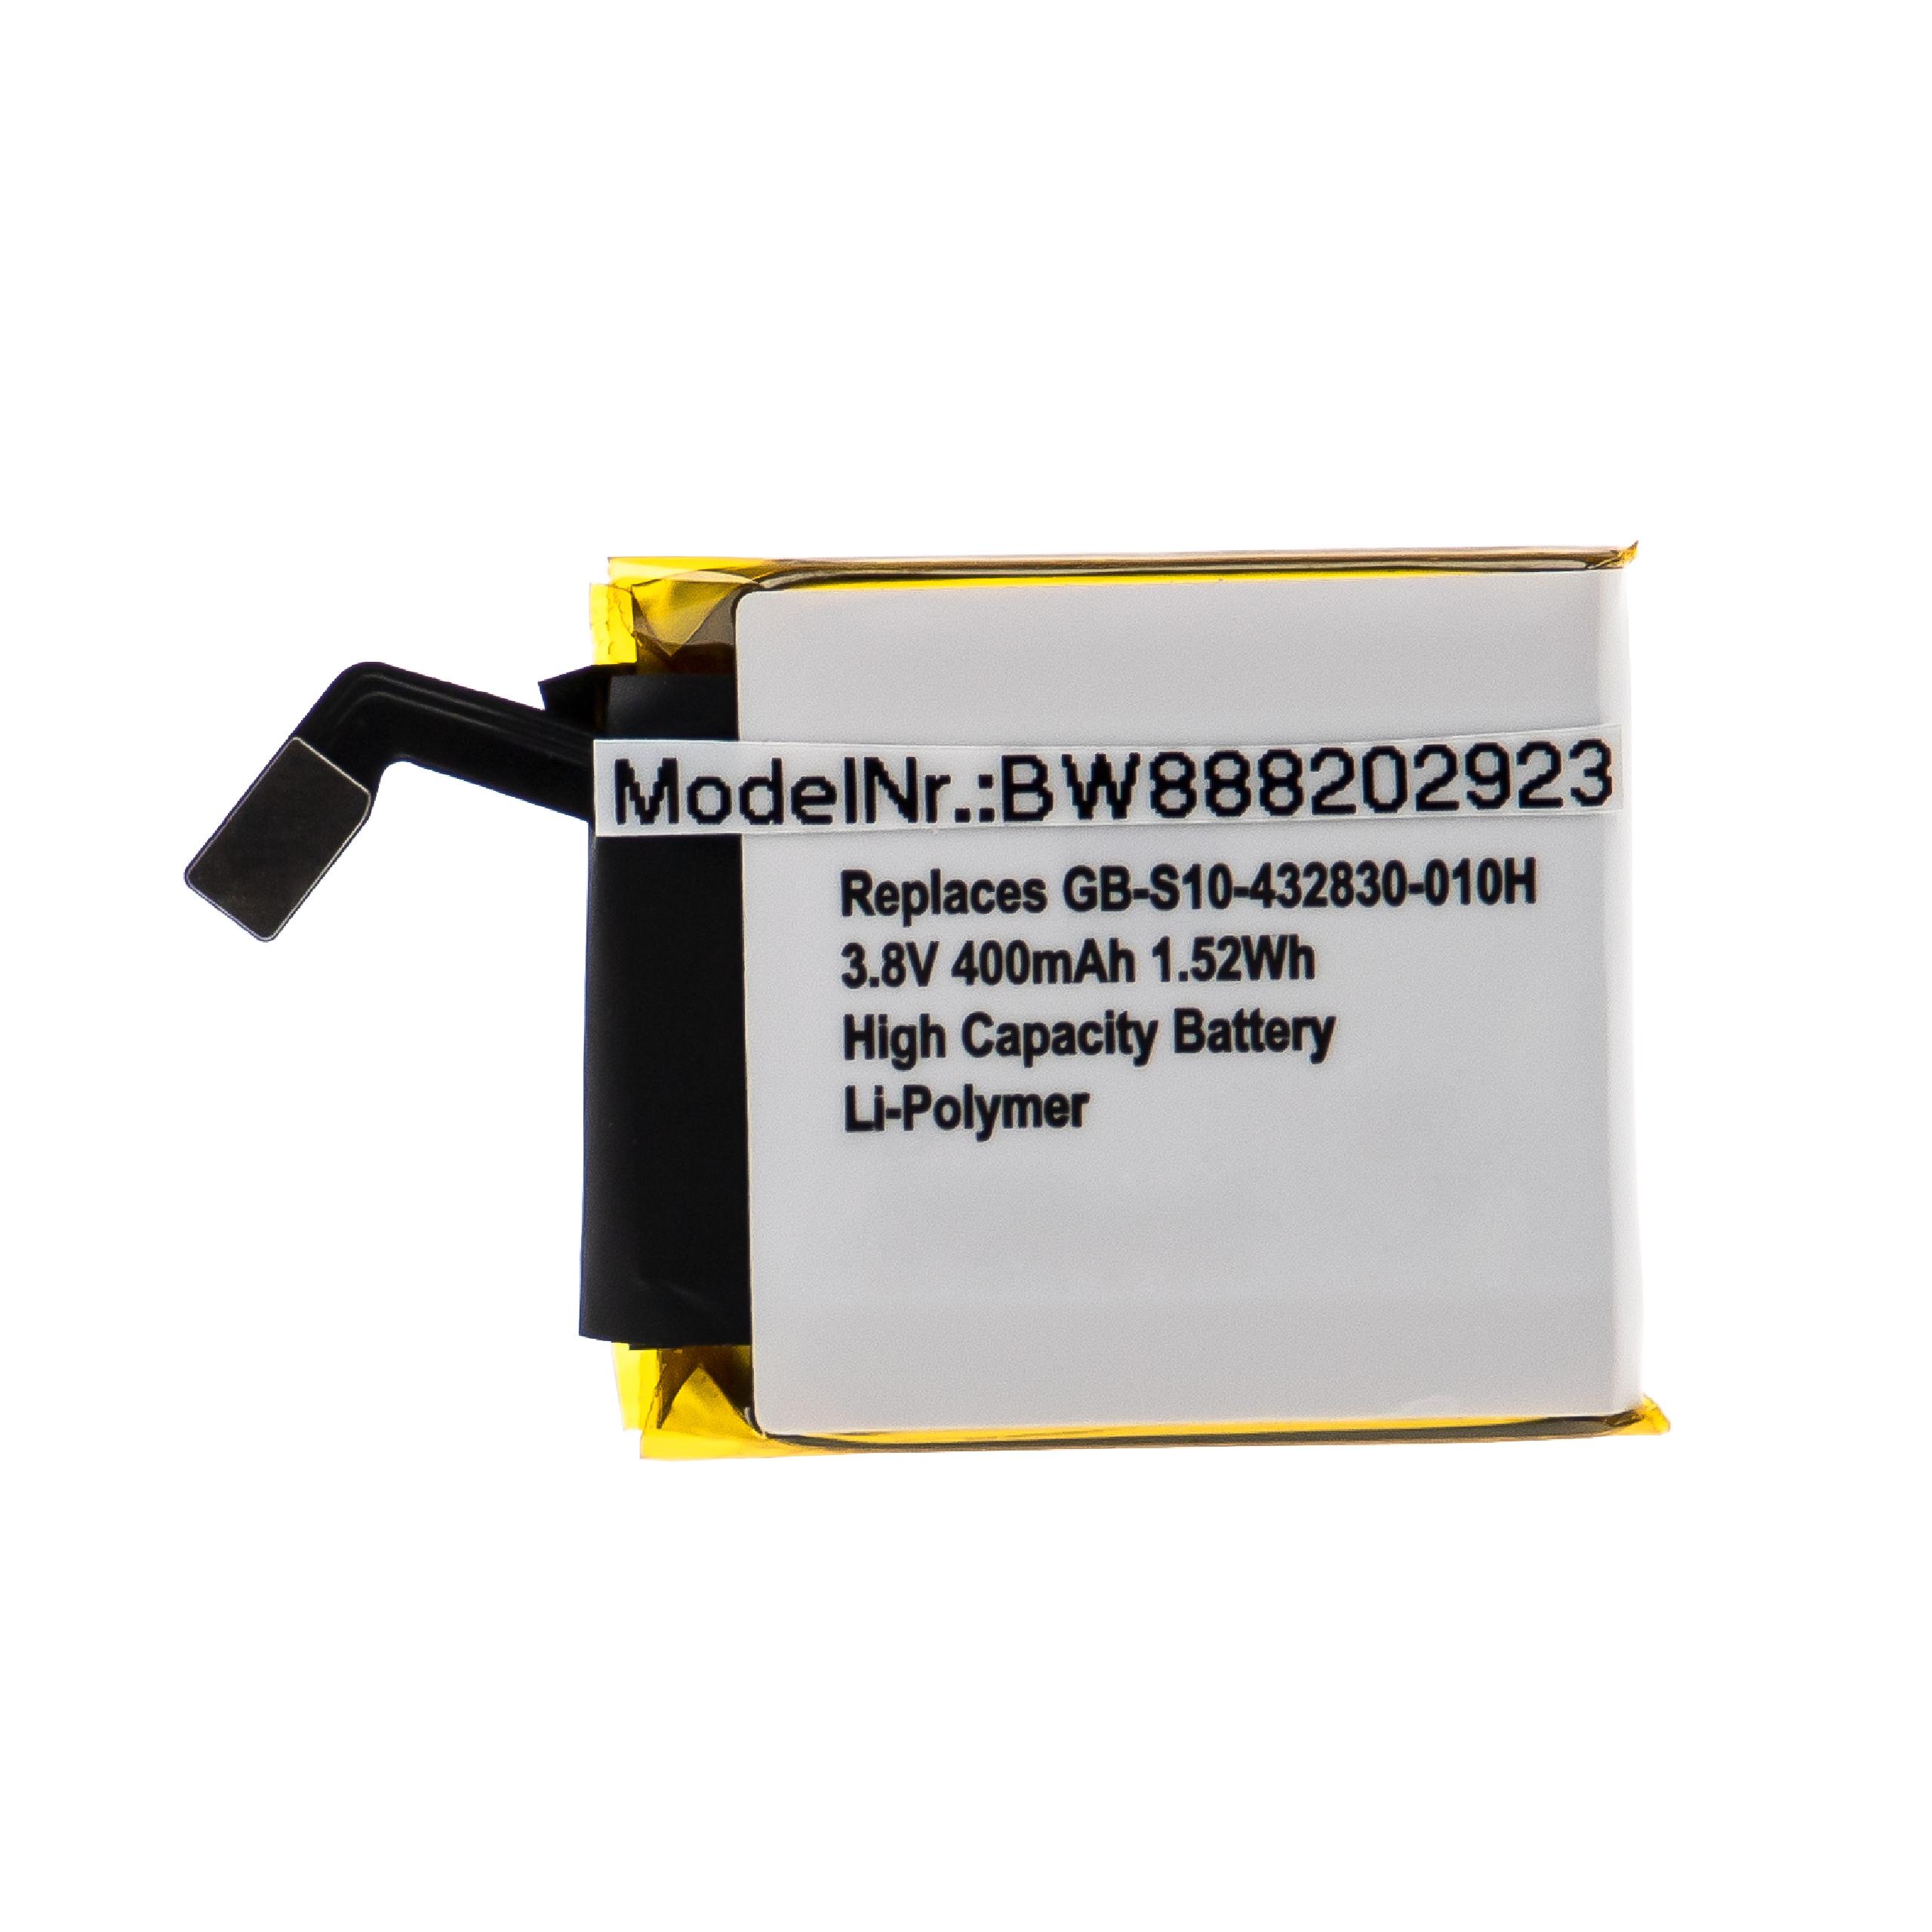 Batterie remplace Sony GB-S10-432830-010H pour montre connectée - 400mAh 3,8V Li-polymère